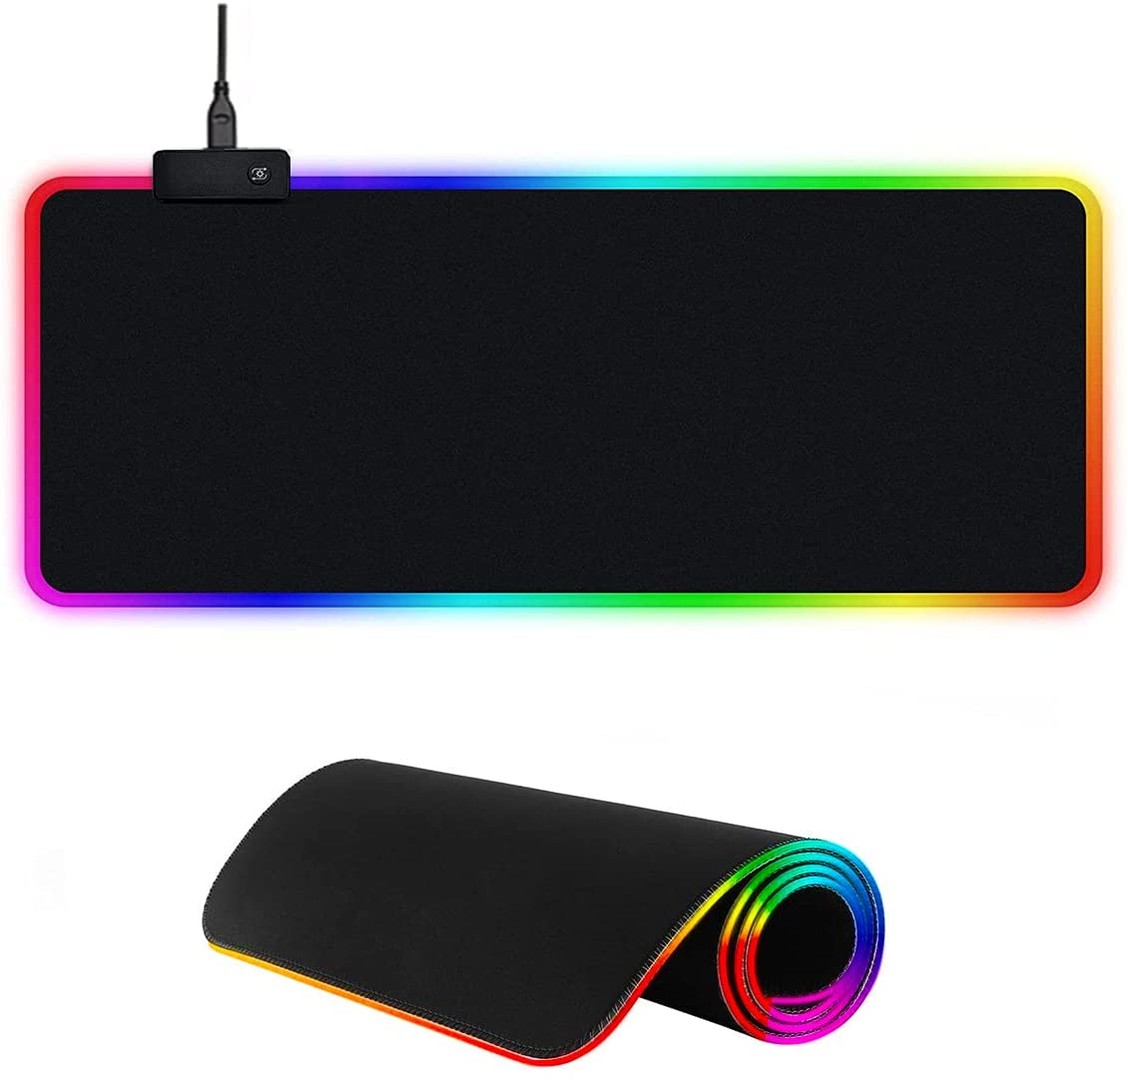 accesorios para electronica - Mousepad Gaming RGB de escritorio para Teclado y Ratón, Goma Impermeable con Bas 1